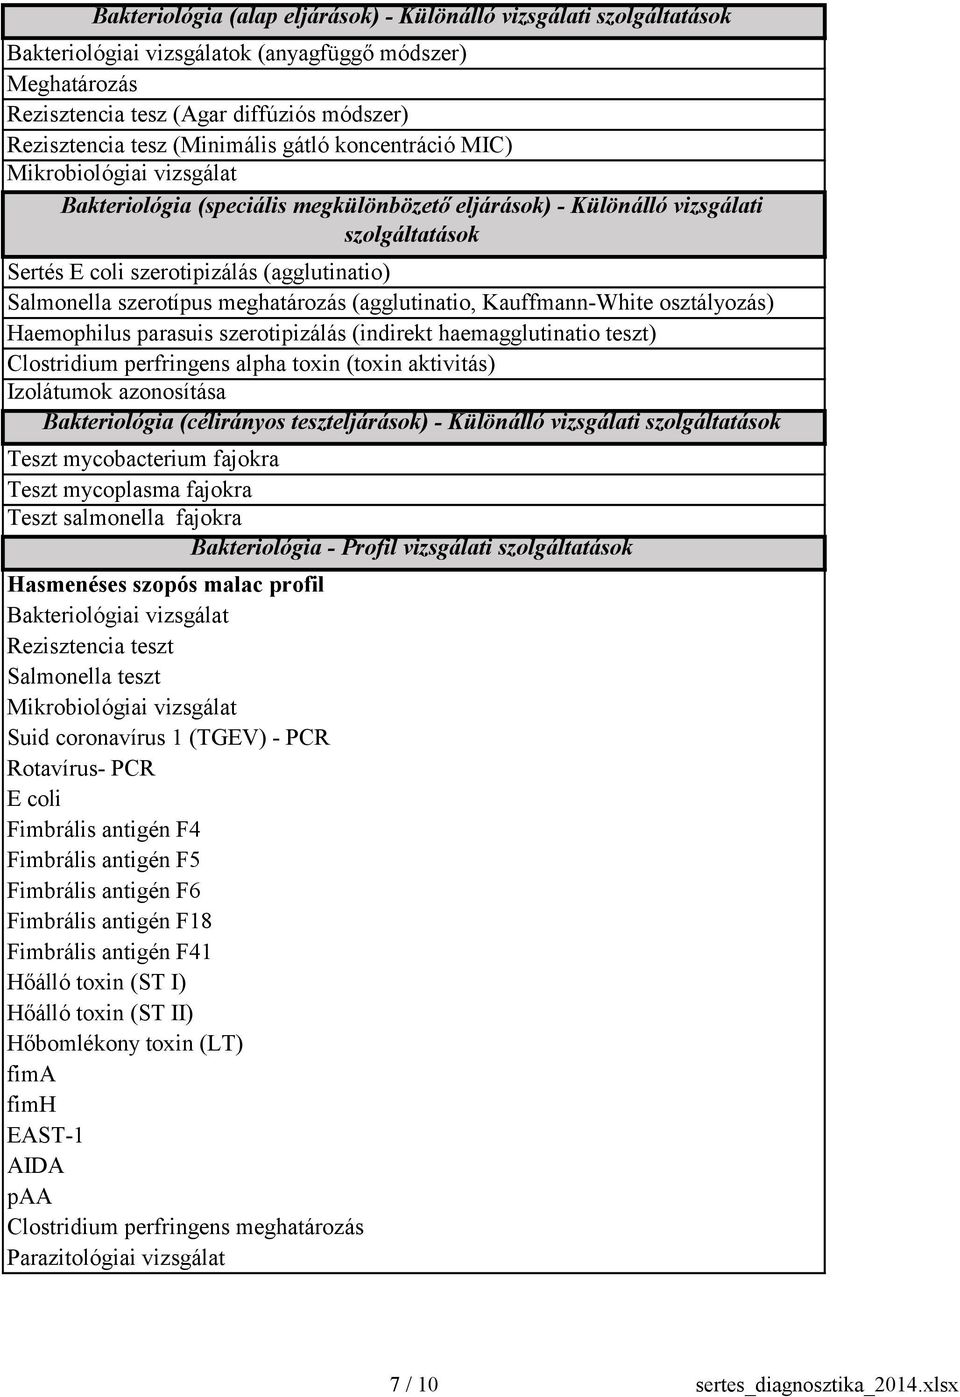 Salmonella szerotípus meghatározás (agglutinatio, Kauffmann-White osztályozás) Haemophilus parasuis szerotipizálás (indirekt haemagglutinatio teszt) Clostridium perfringens alpha toxin (toxin